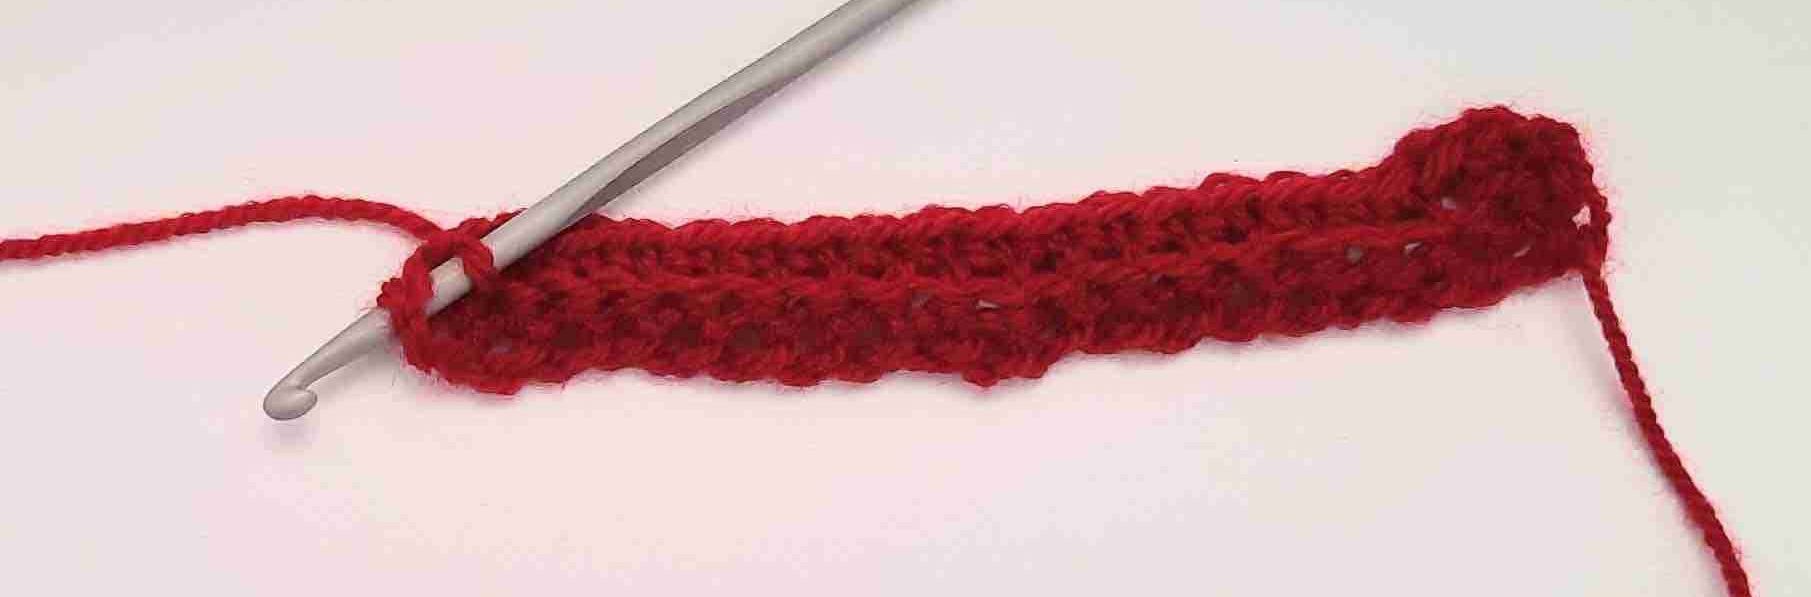 sweater scarf crochet pattern free